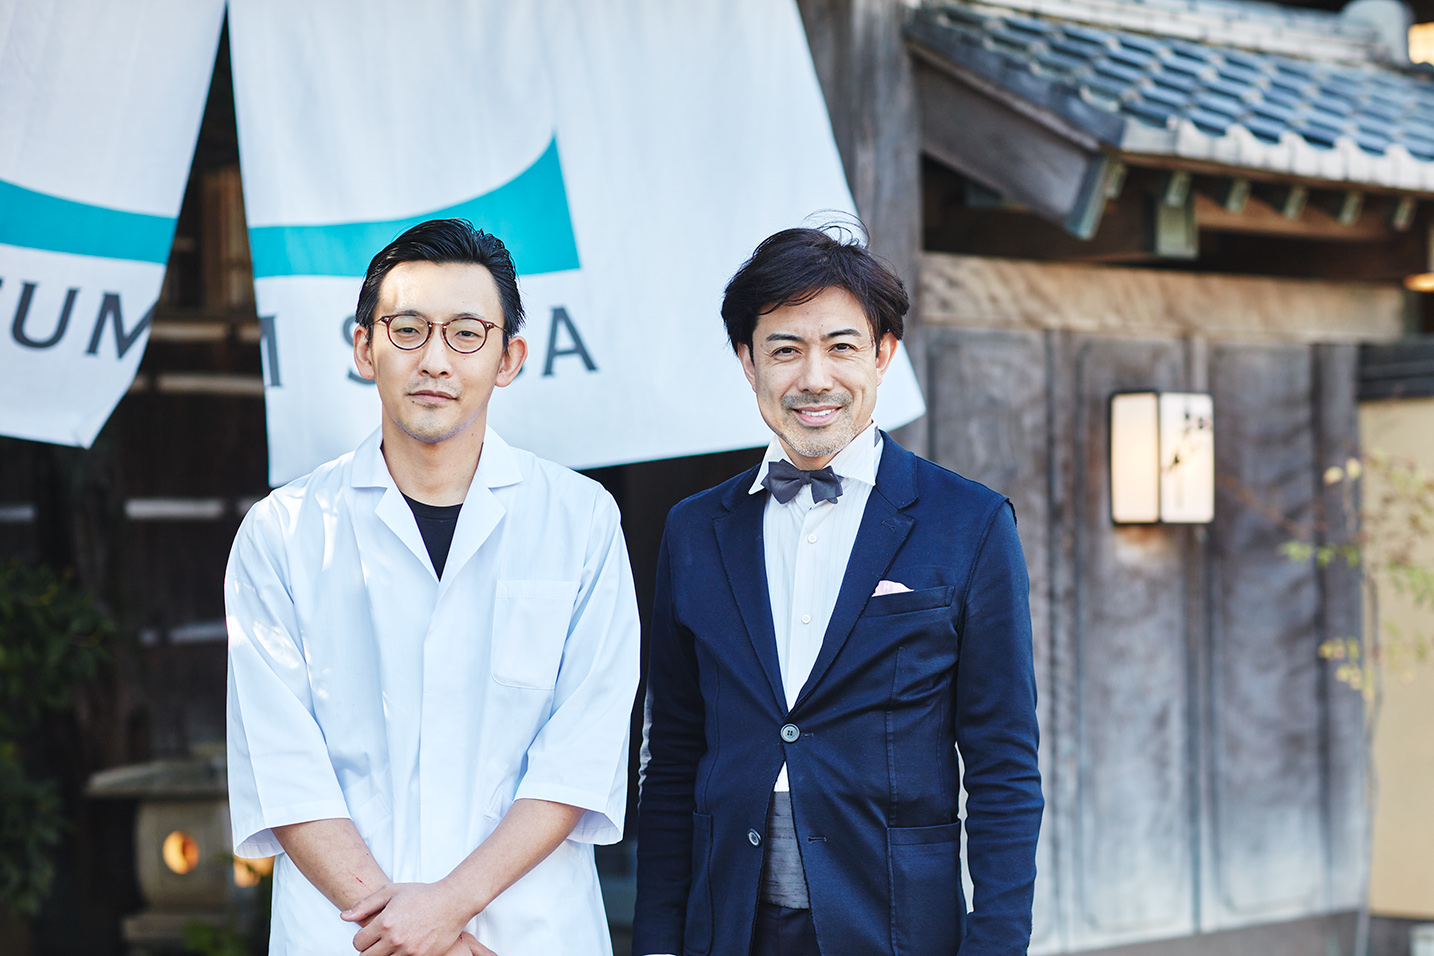 唐津「料理の宿 松の井」の料理長、森次庸介さん。右は東京から駆け付けたソムリエ／ワインテイスターの大越基裕さん。